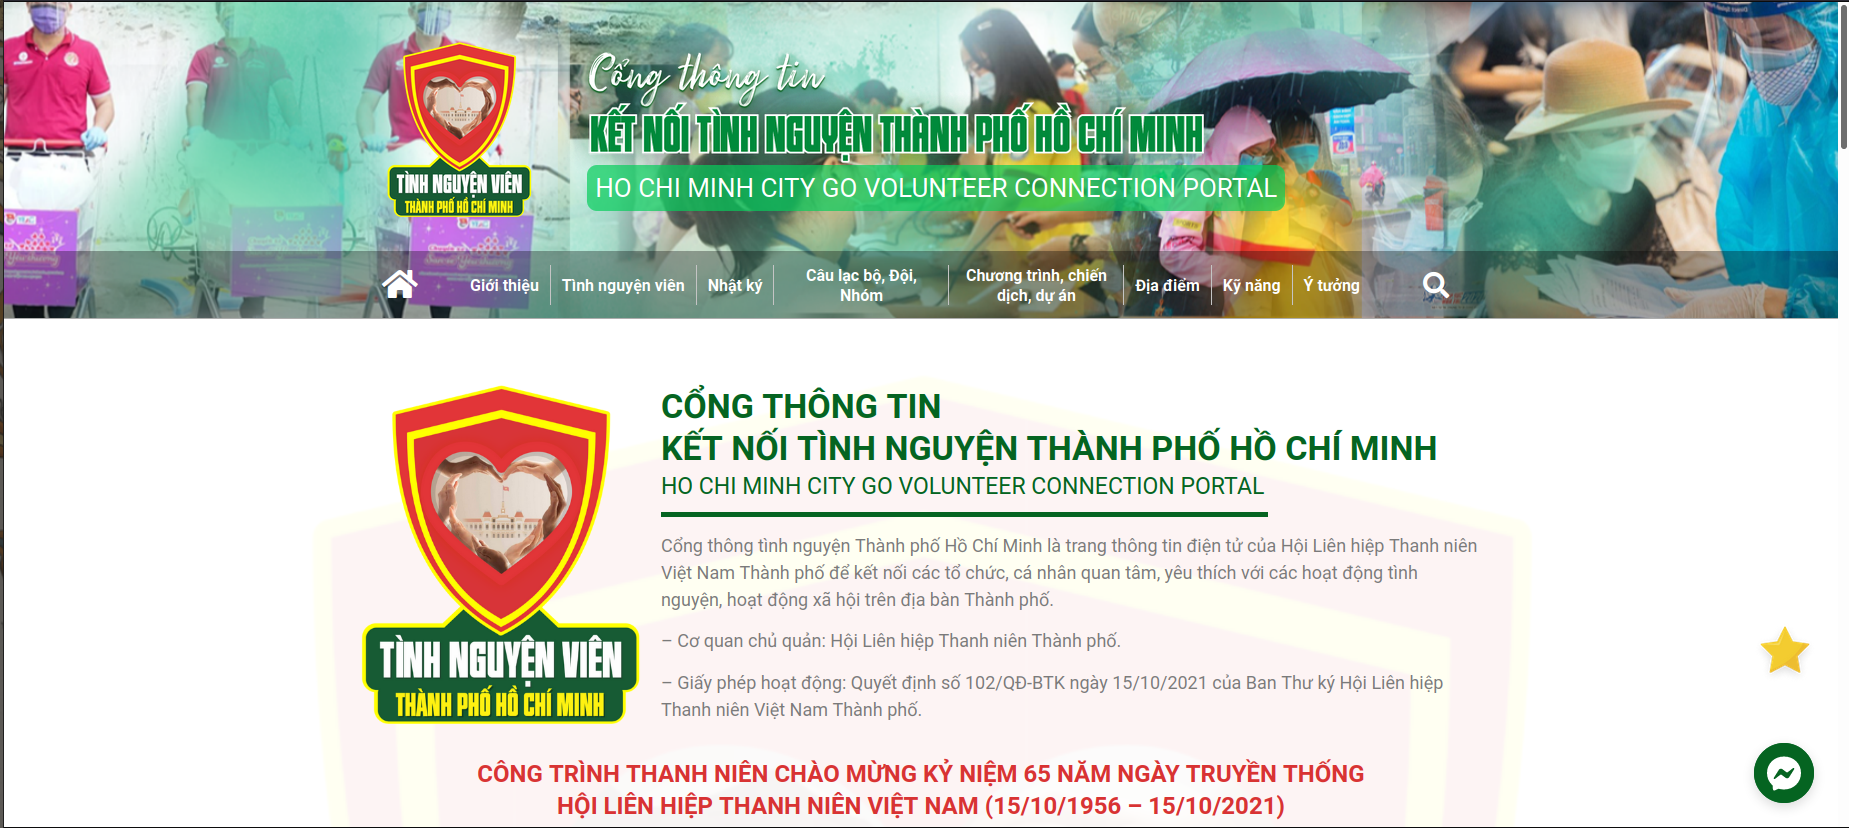 Go volunteer Ho Chi Minh city system